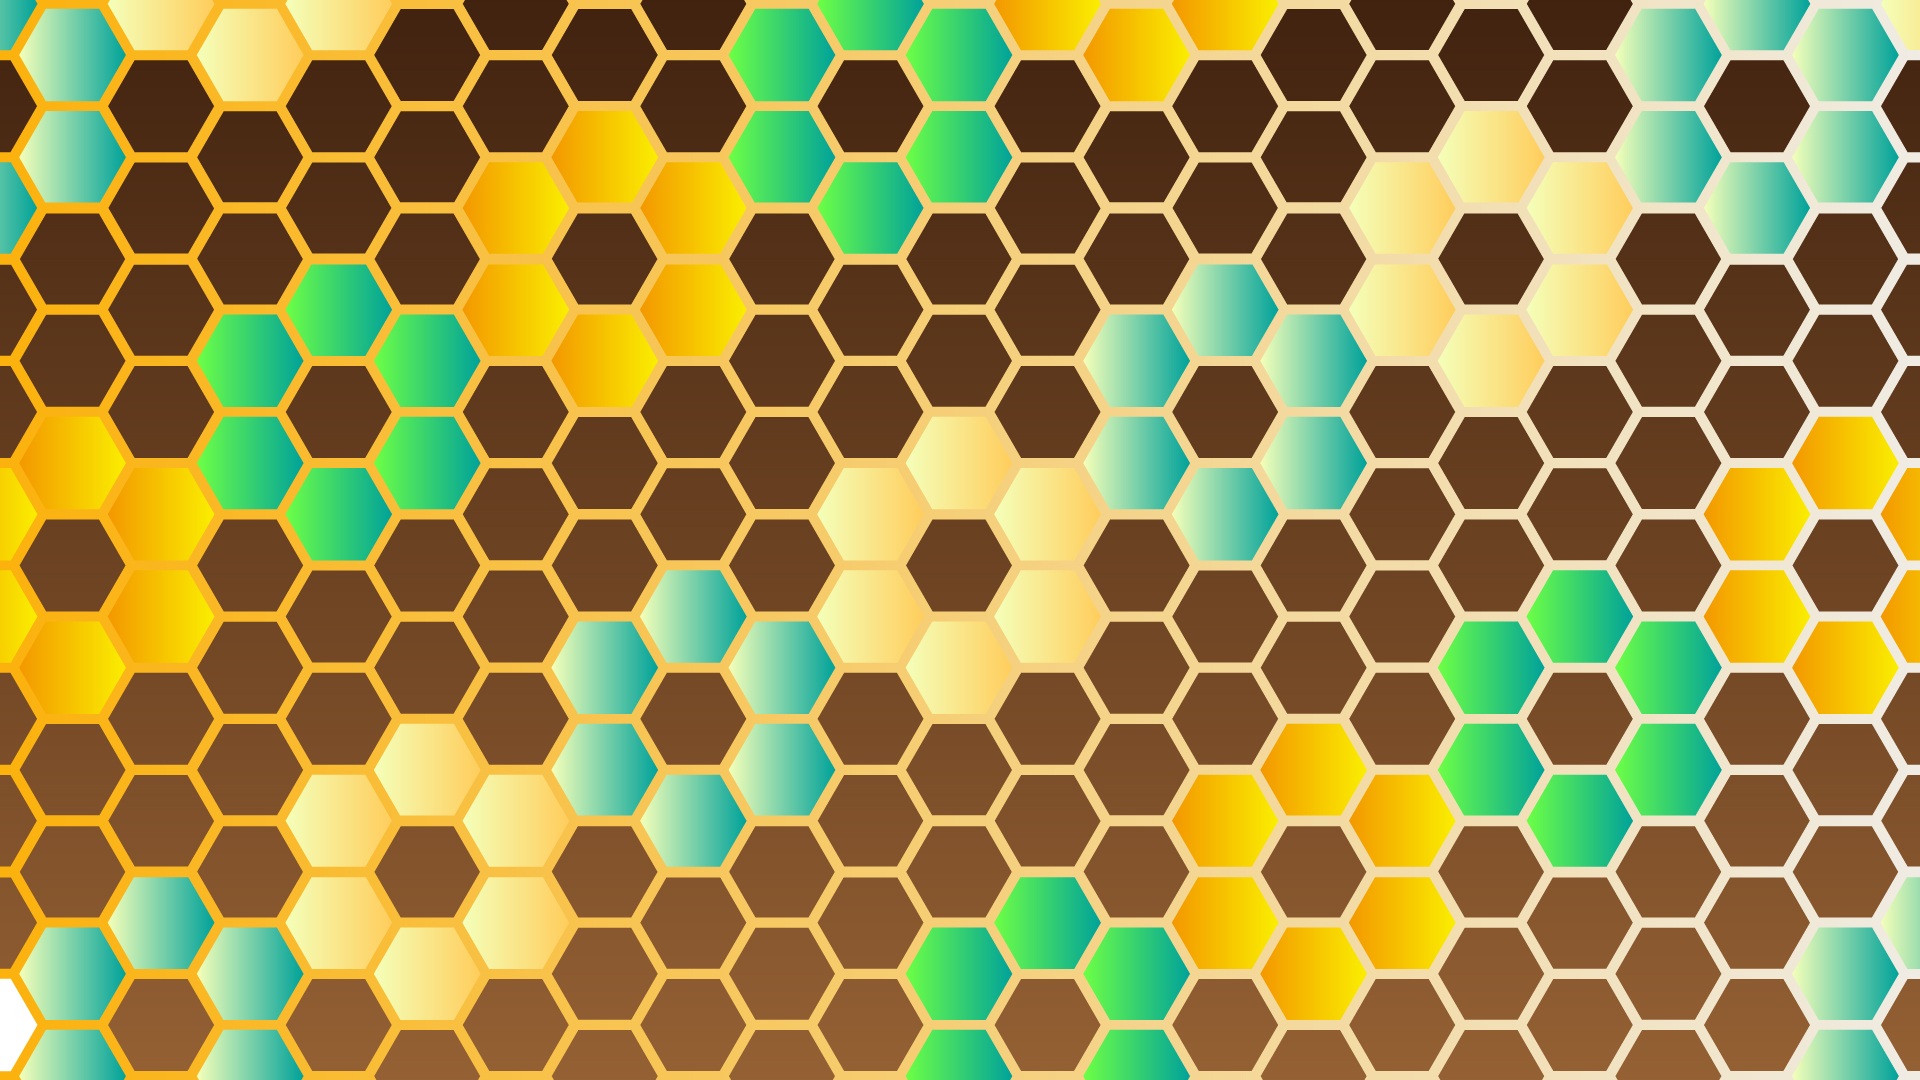 カラフルな蜂の巣模様の壁紙・背景素材 1,920px×1,080px